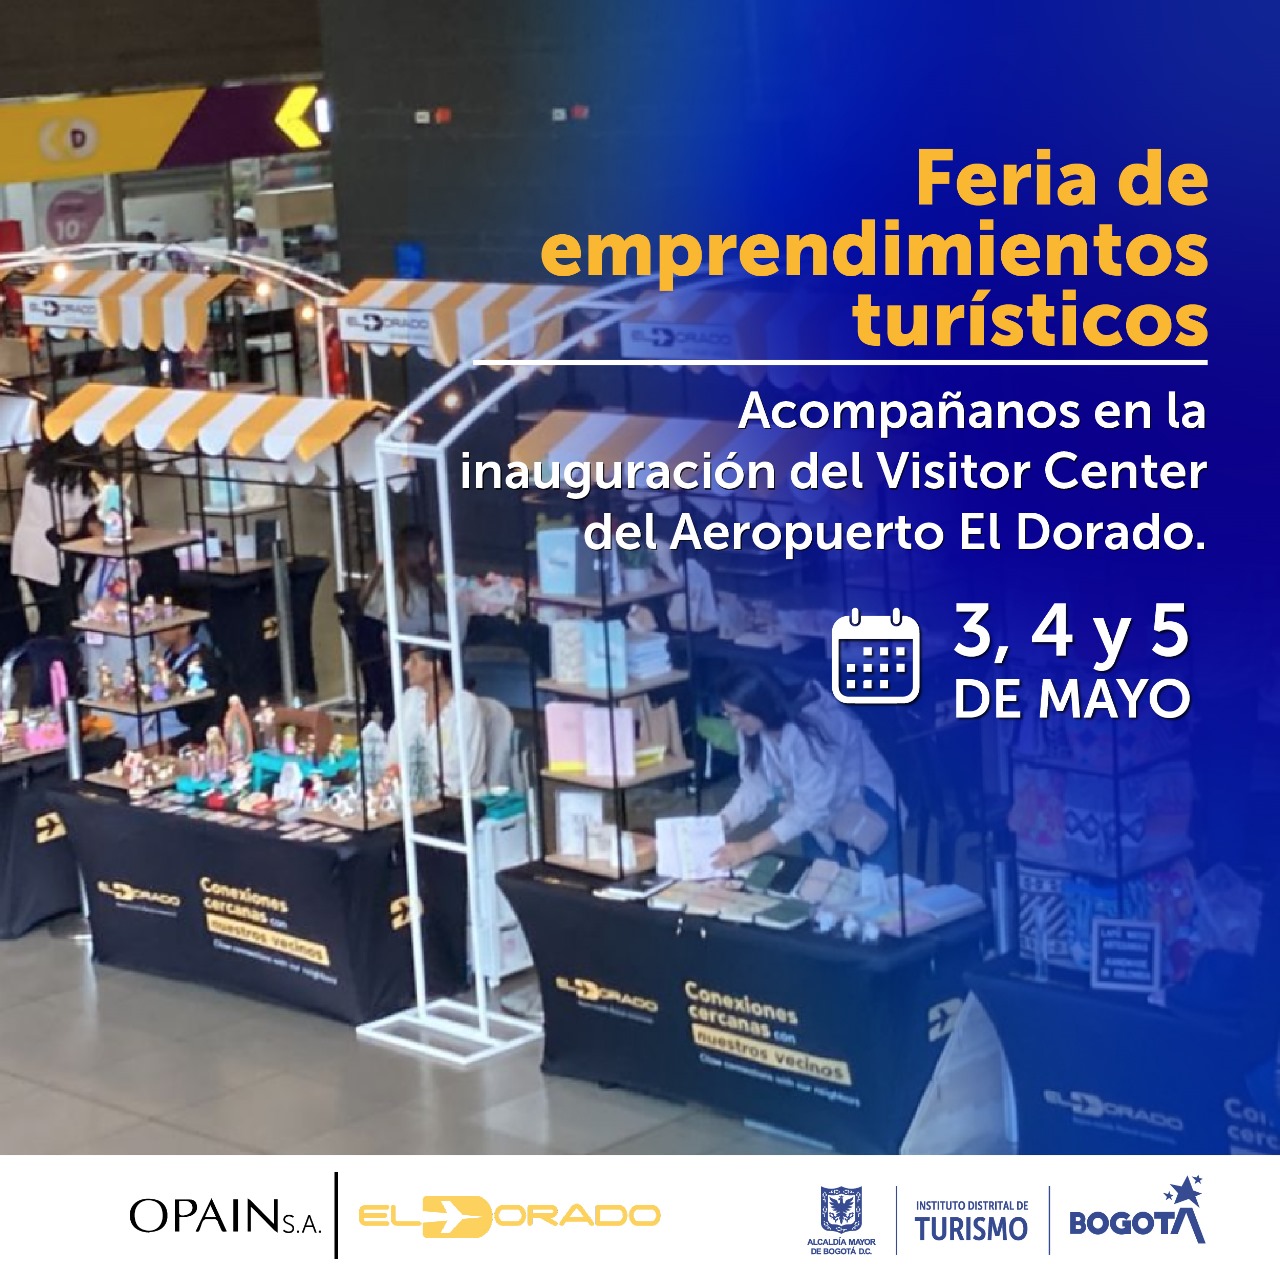 Bogotá impulsa Feria de Emprendimientos Turísticos en el Aeropuerto Internacional El Dorado